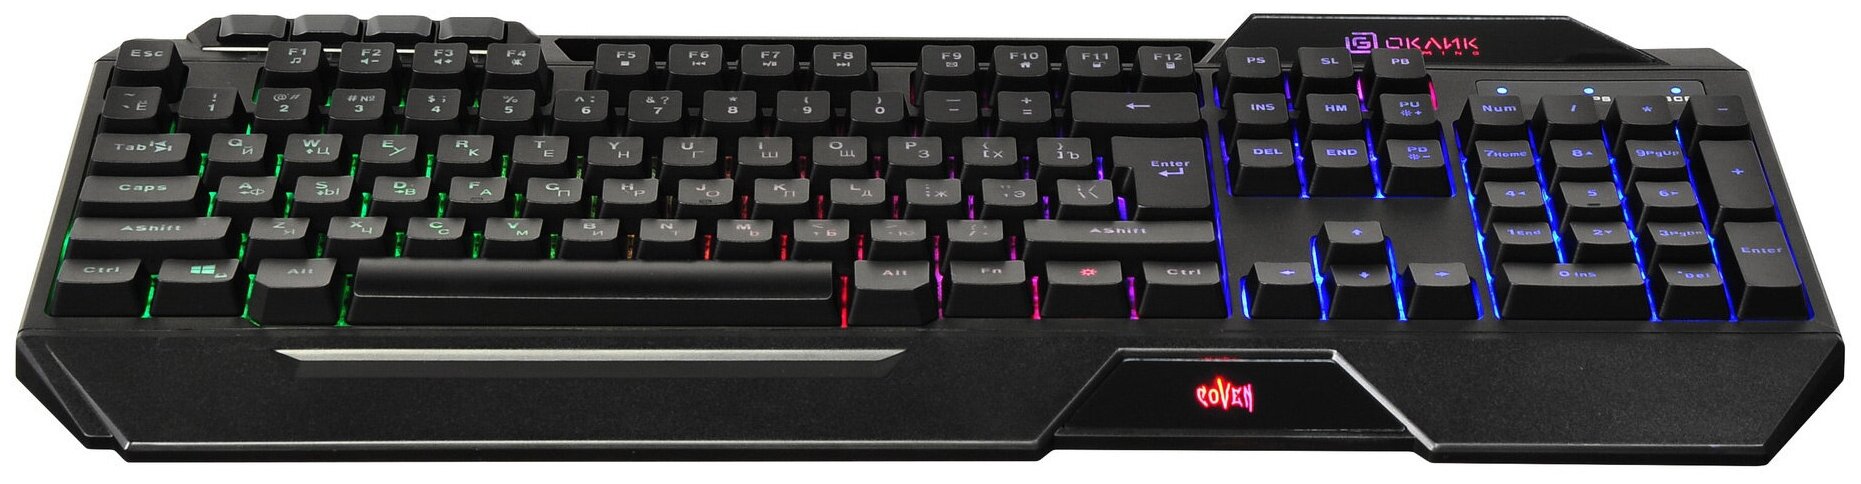 Клавиатура с подсветкой для компьюетра, клавиатура проводная мембранная RGB, оклик